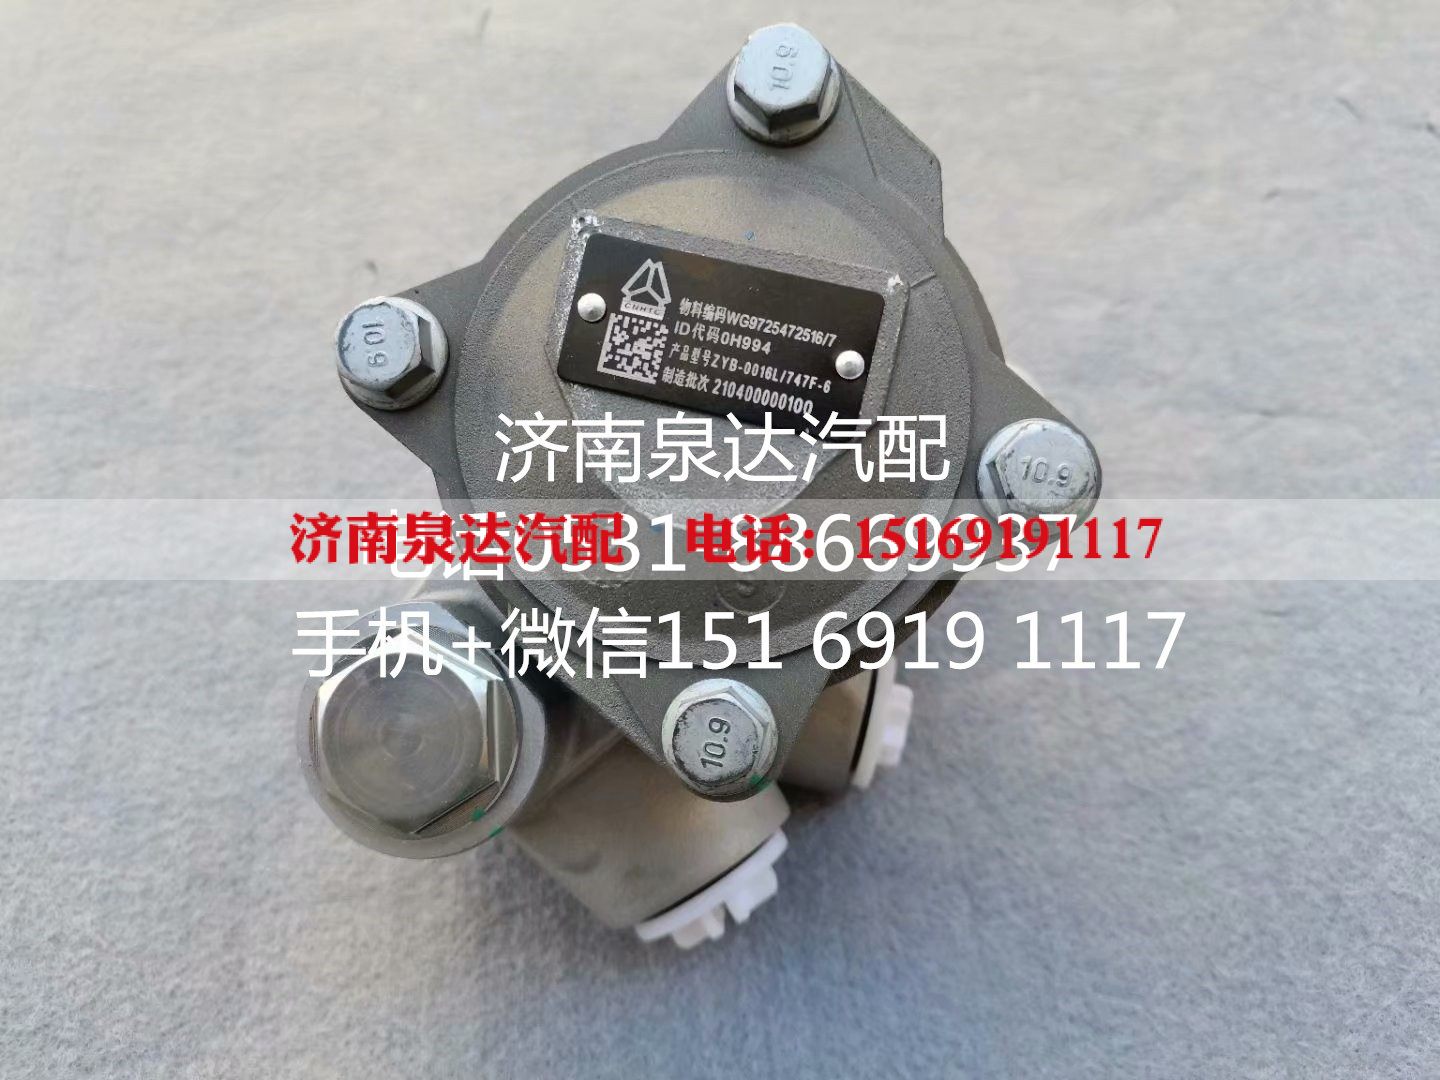 WG9725472516,转向助力泵,济南泉达汽配有限公司